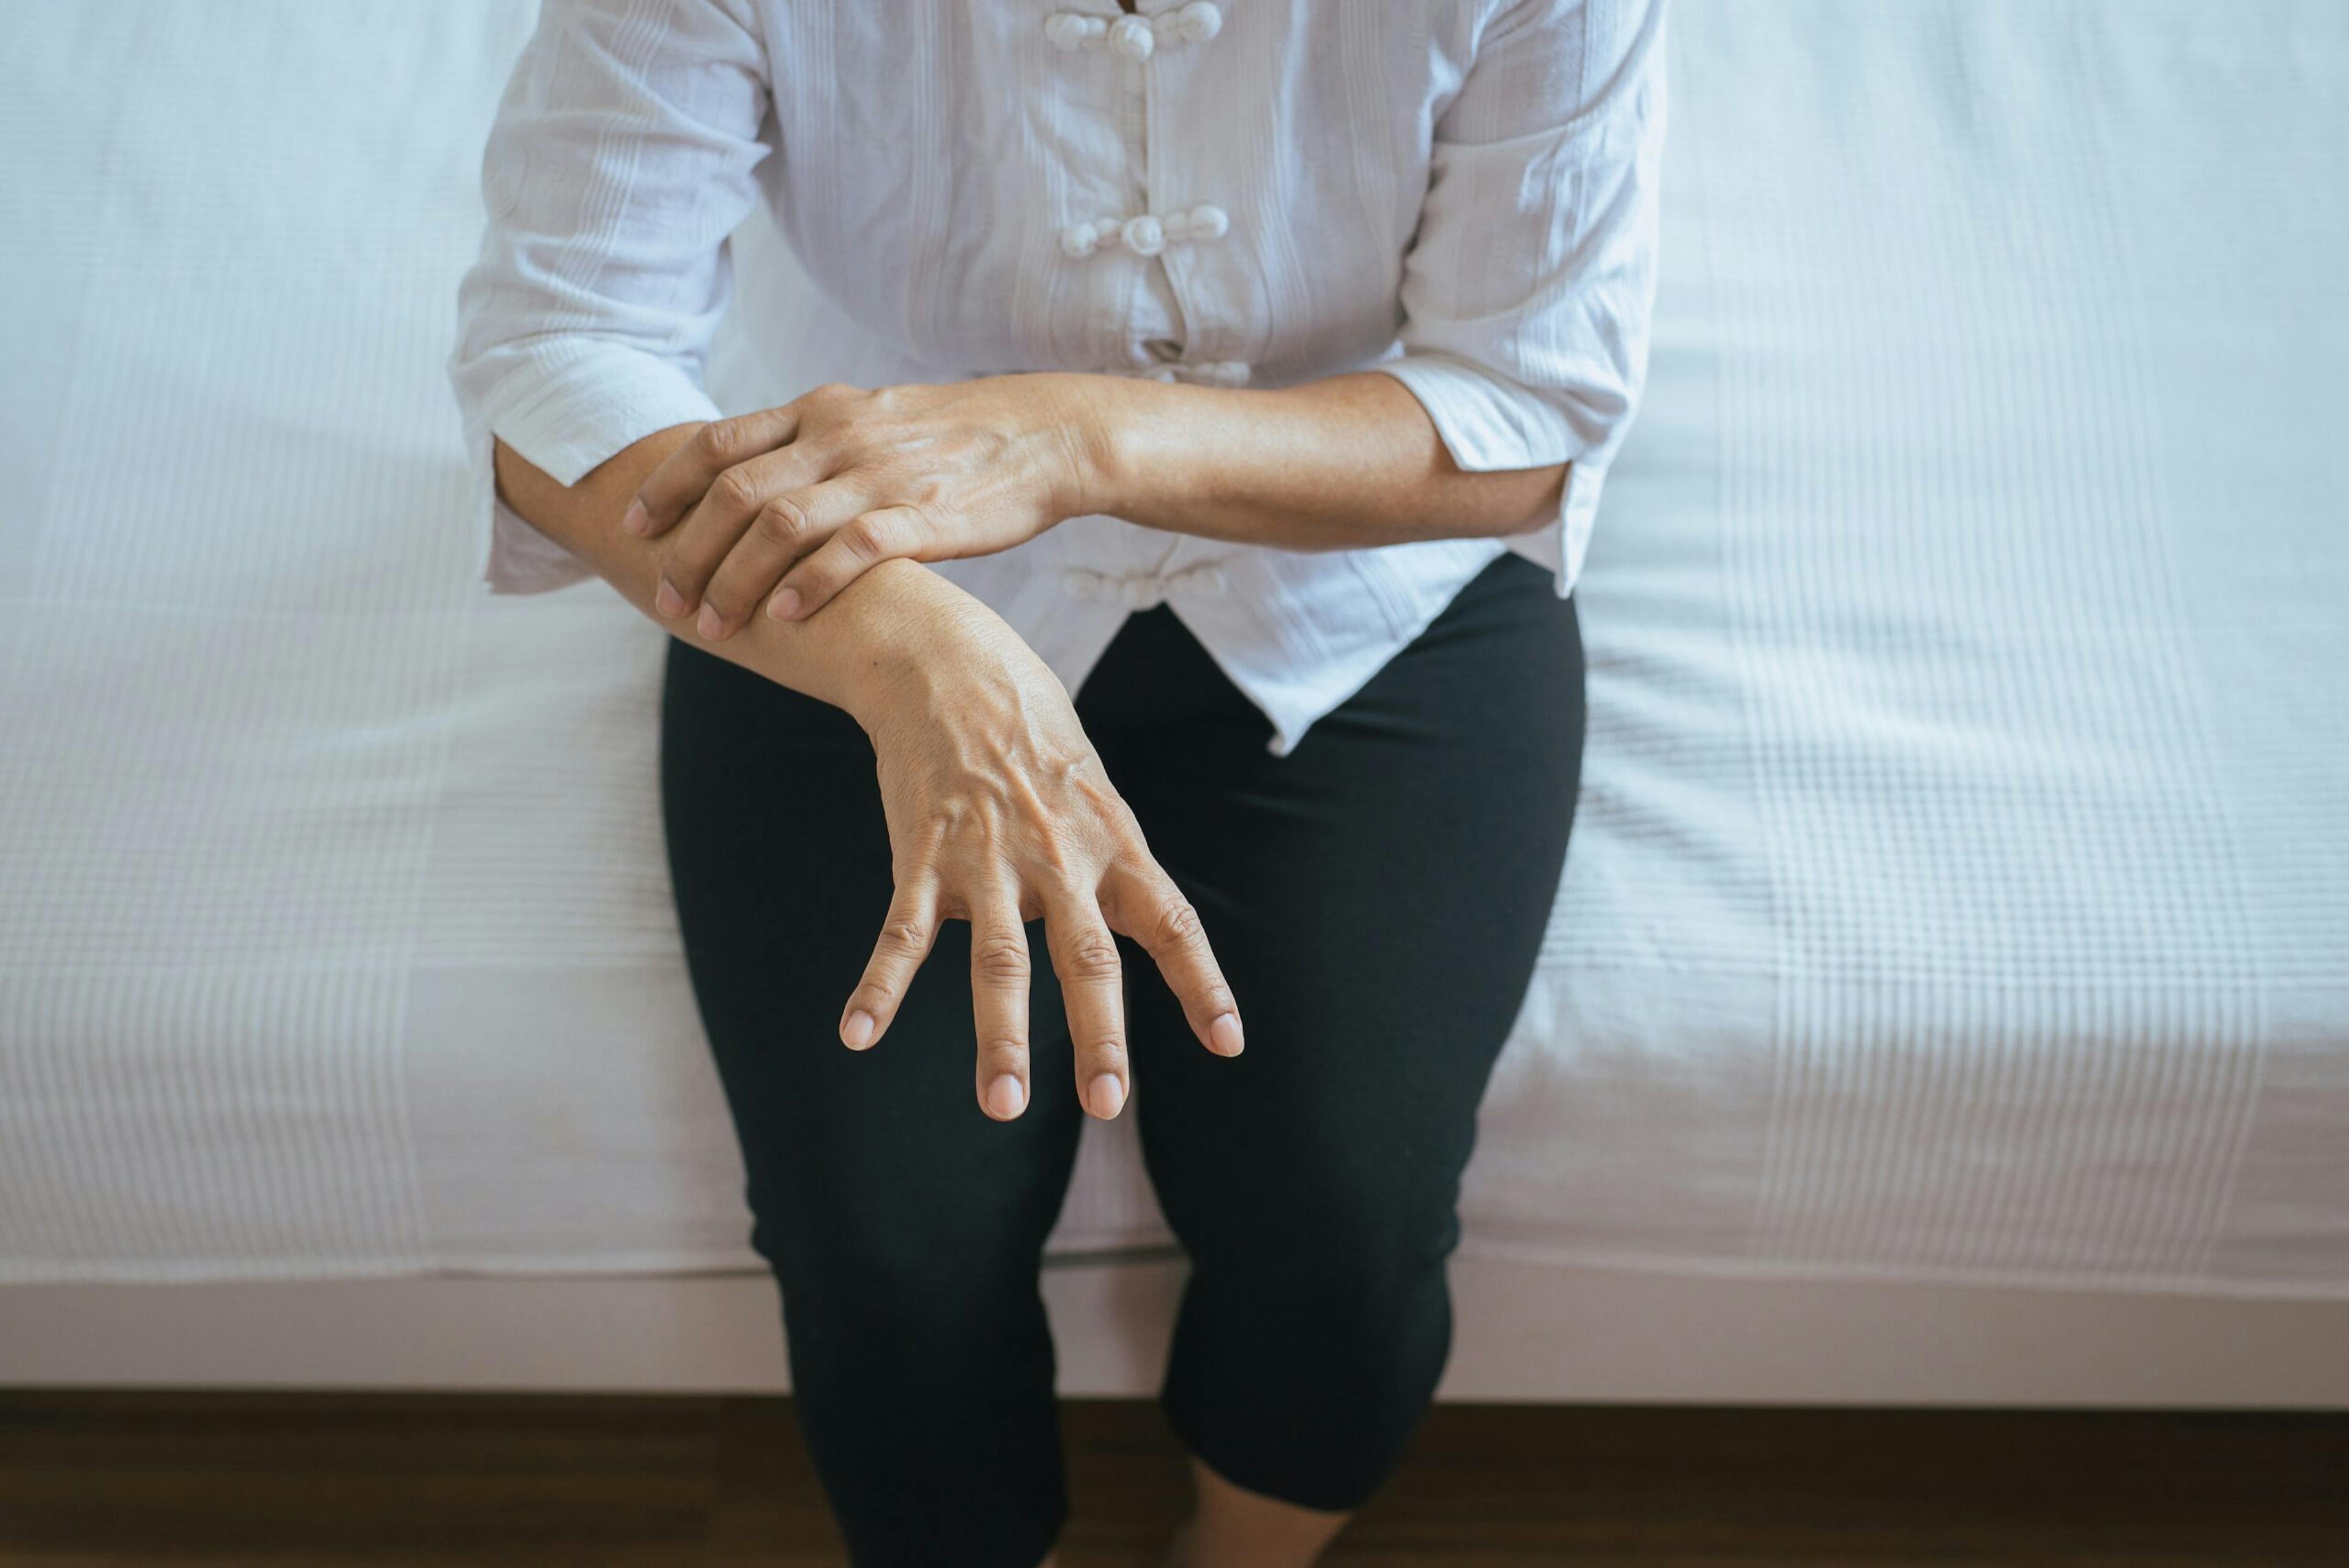 Elderly woman suffering with parkinson&#8217;s disease symptoms